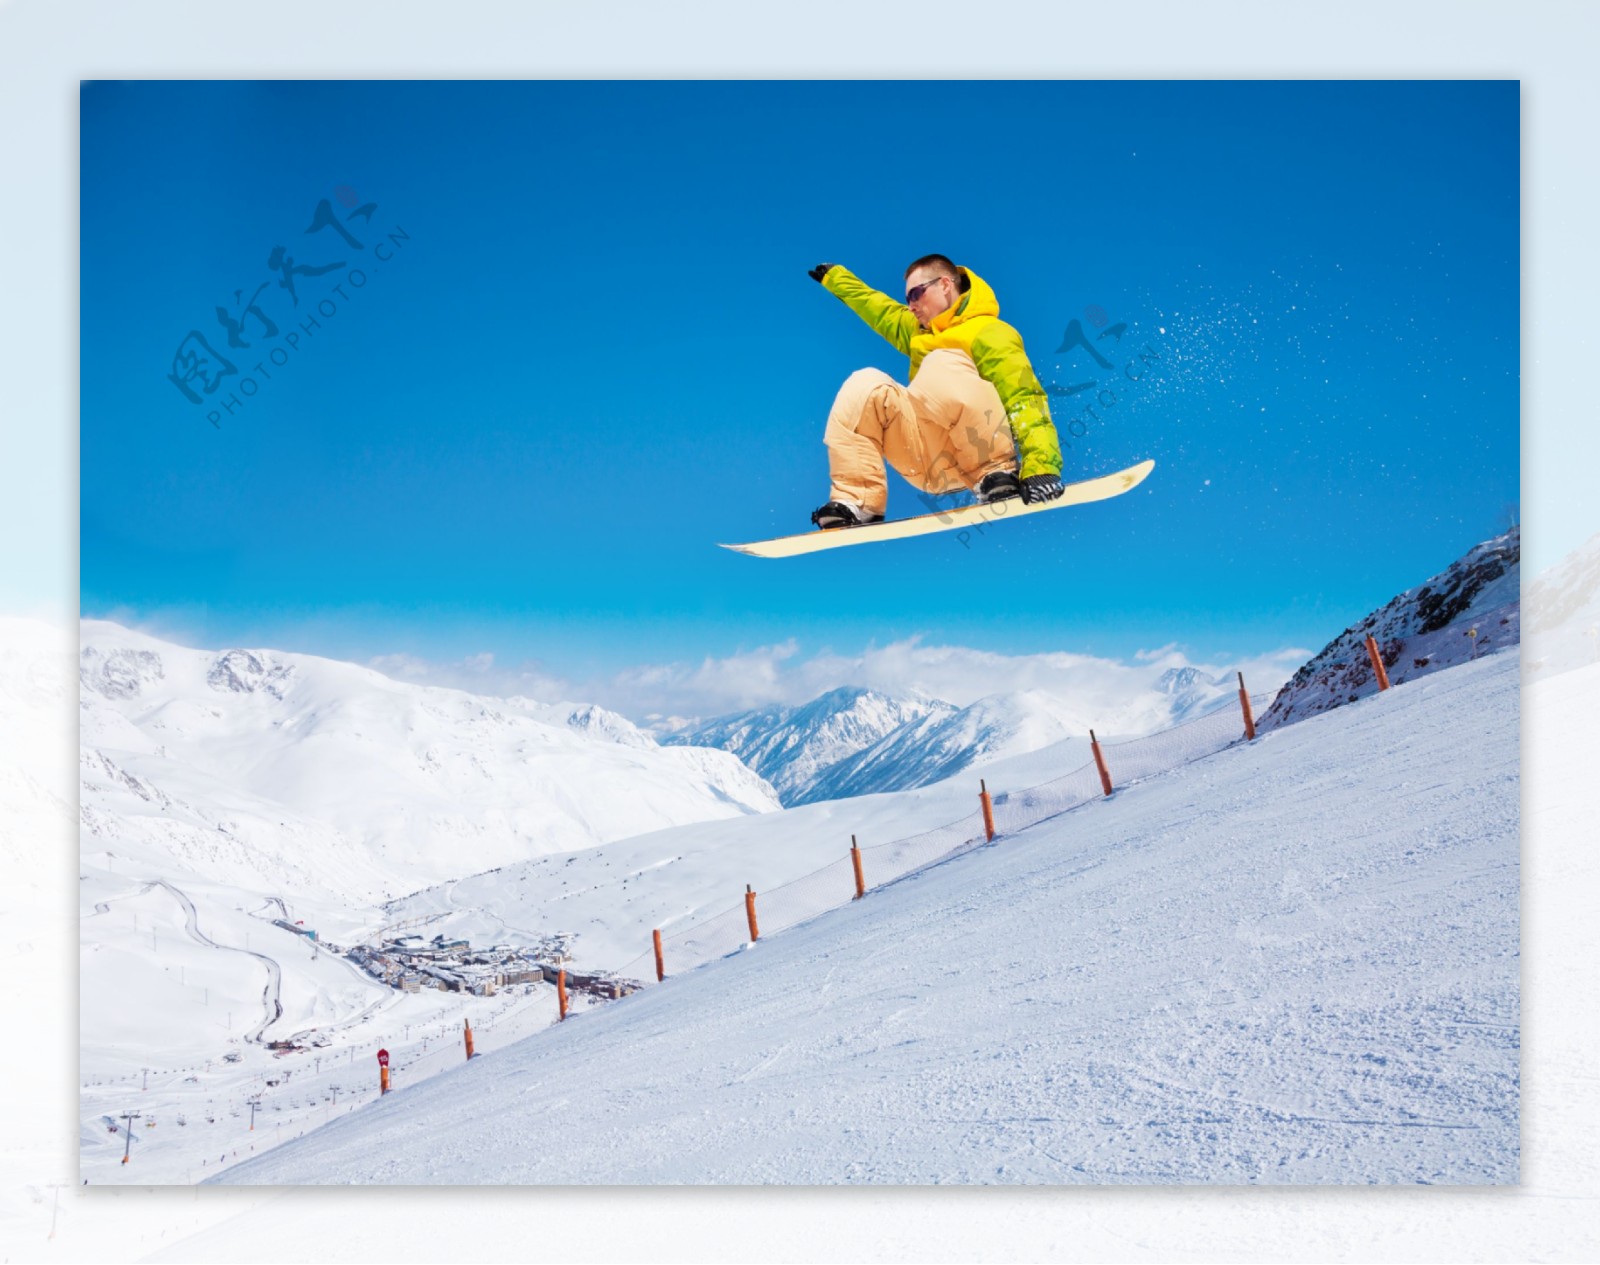 腾空飞跃的滑雪运动员